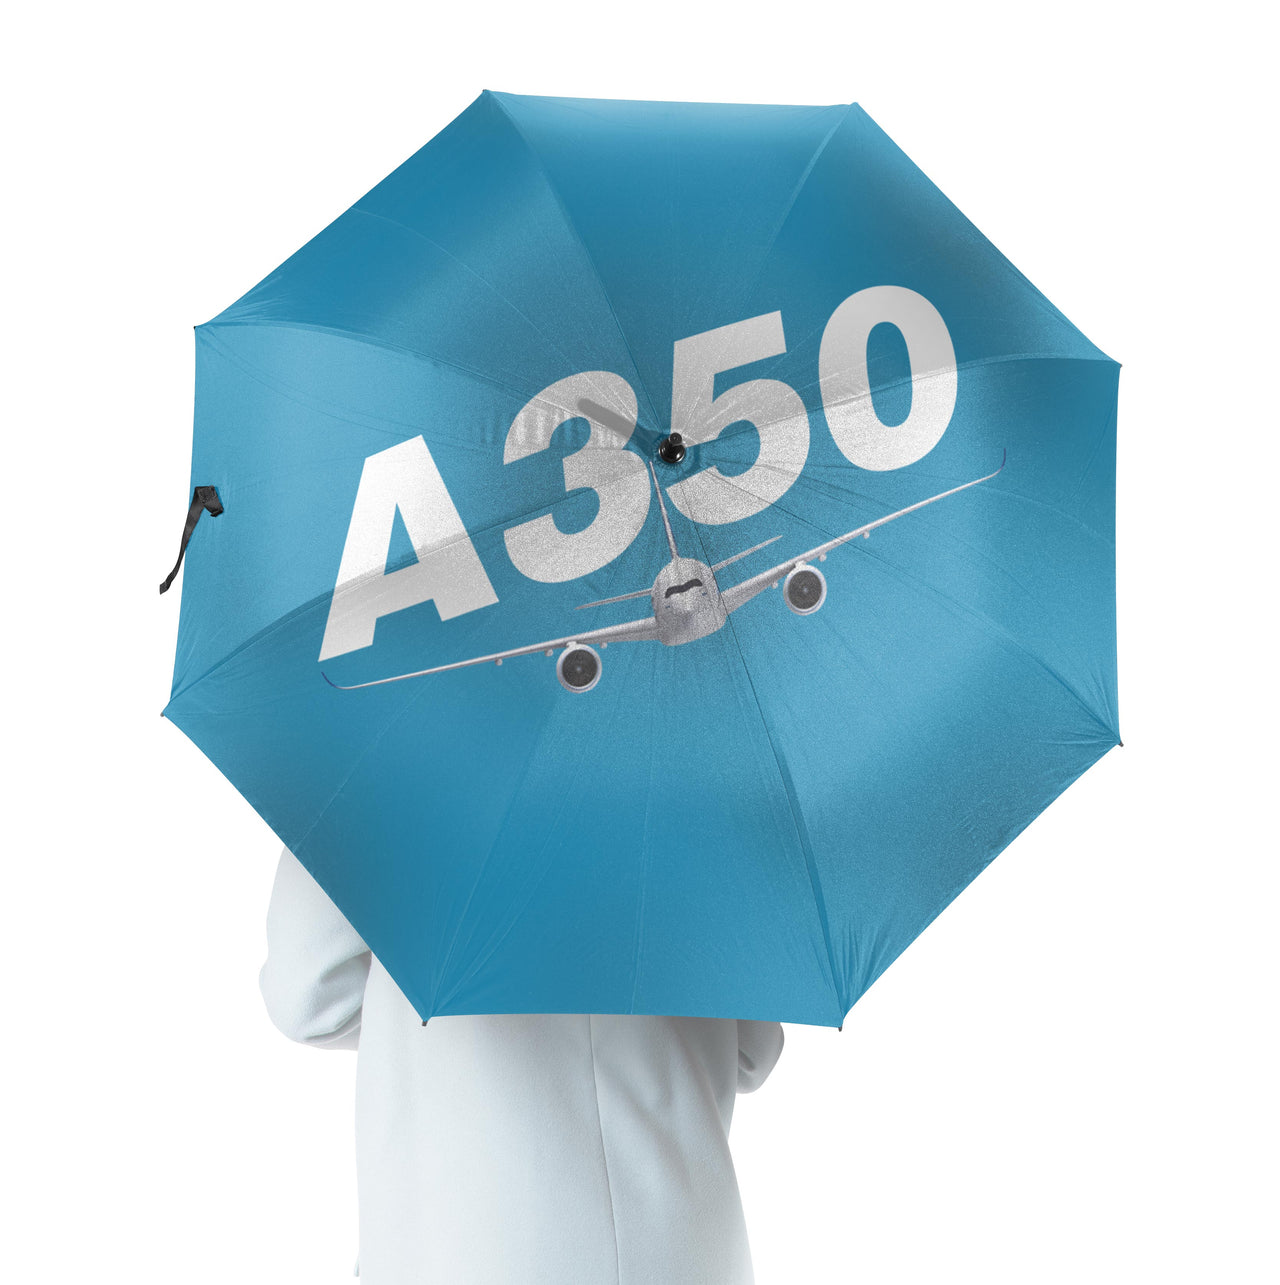 Super Airbus A350 Designed Umbrella